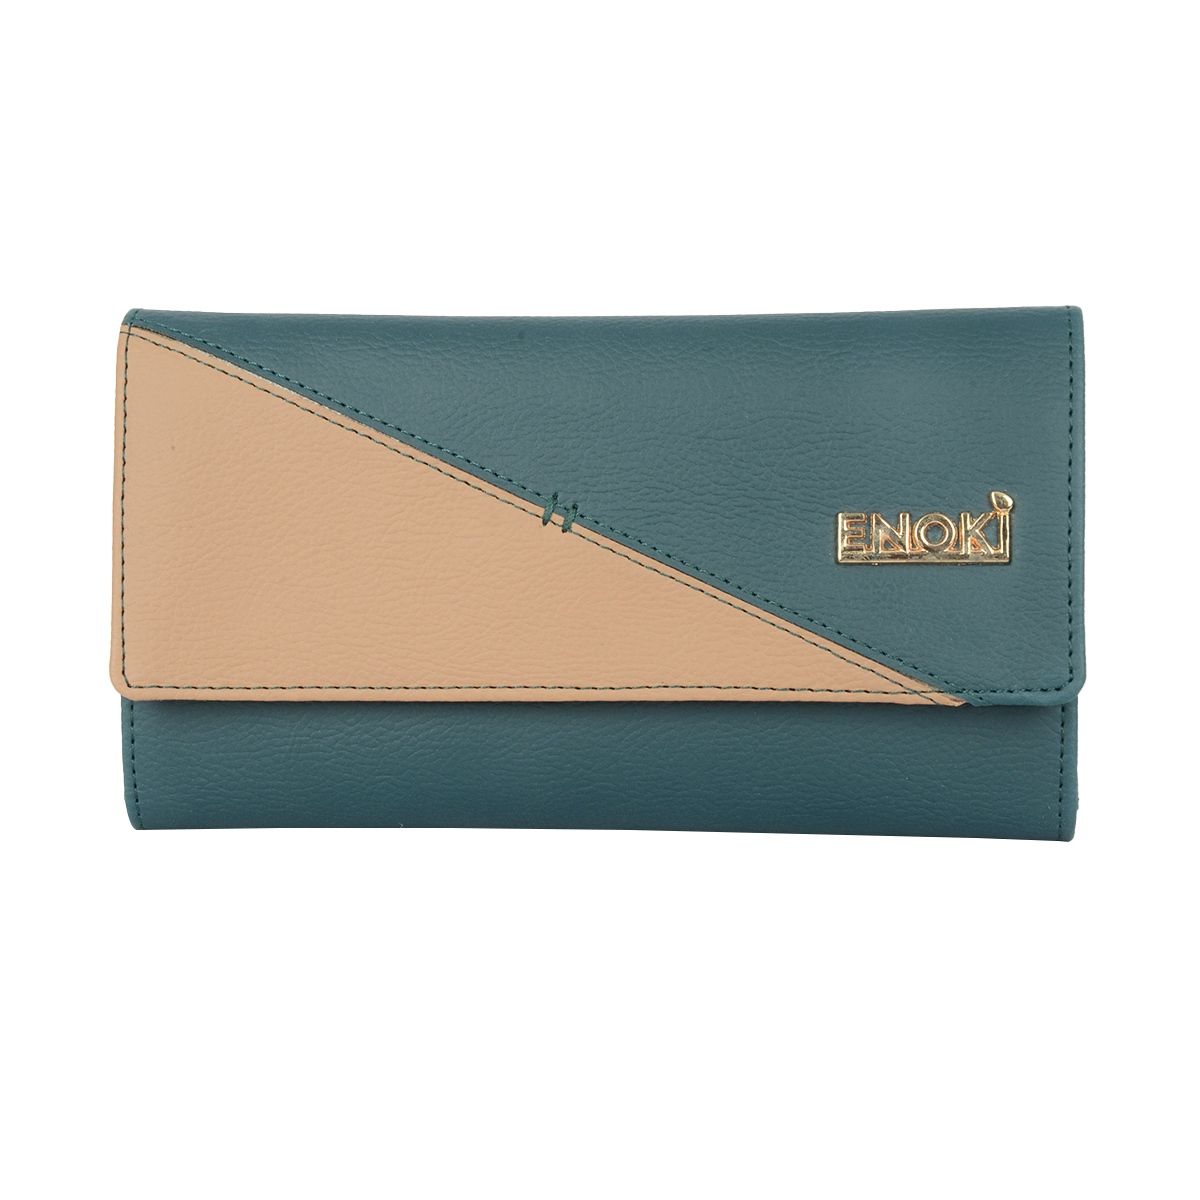 ENOKI Women's Wallet (Blue)